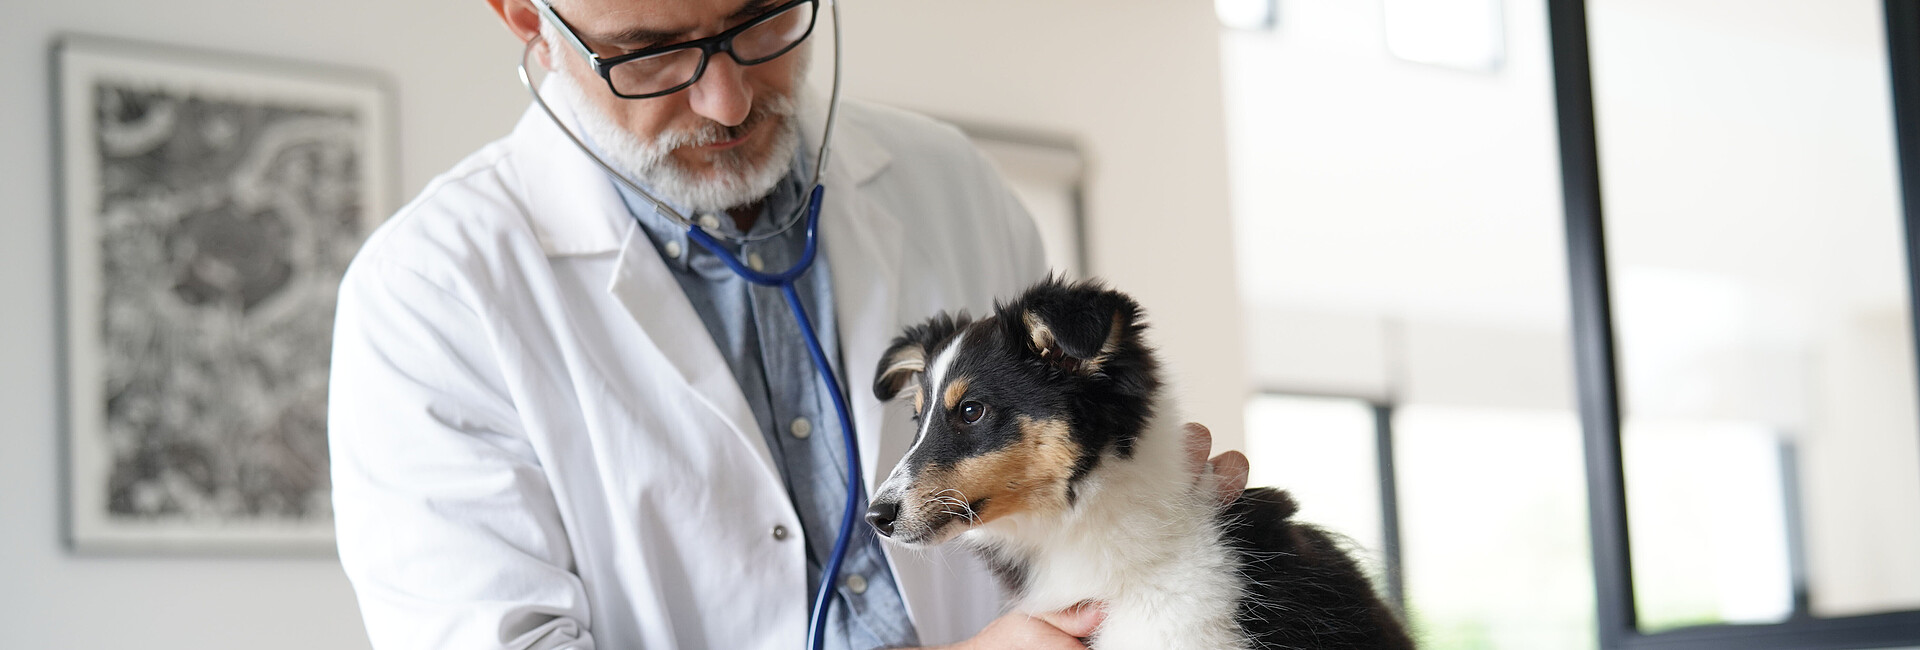 Bild zeigt einen Tierarzt mit einem Hund